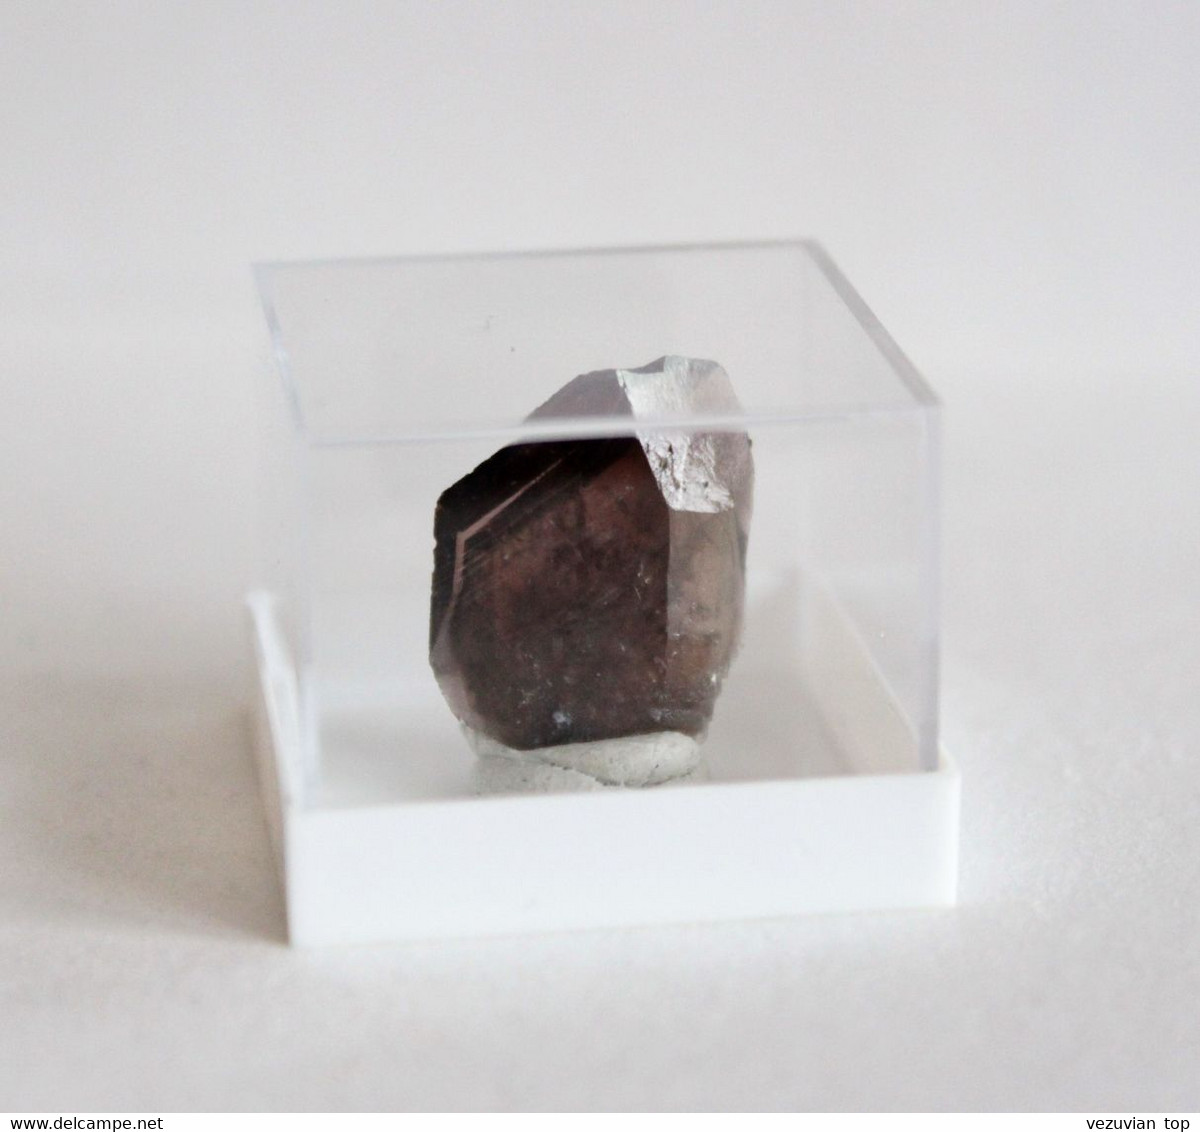 Axinite-(Fe) crystal